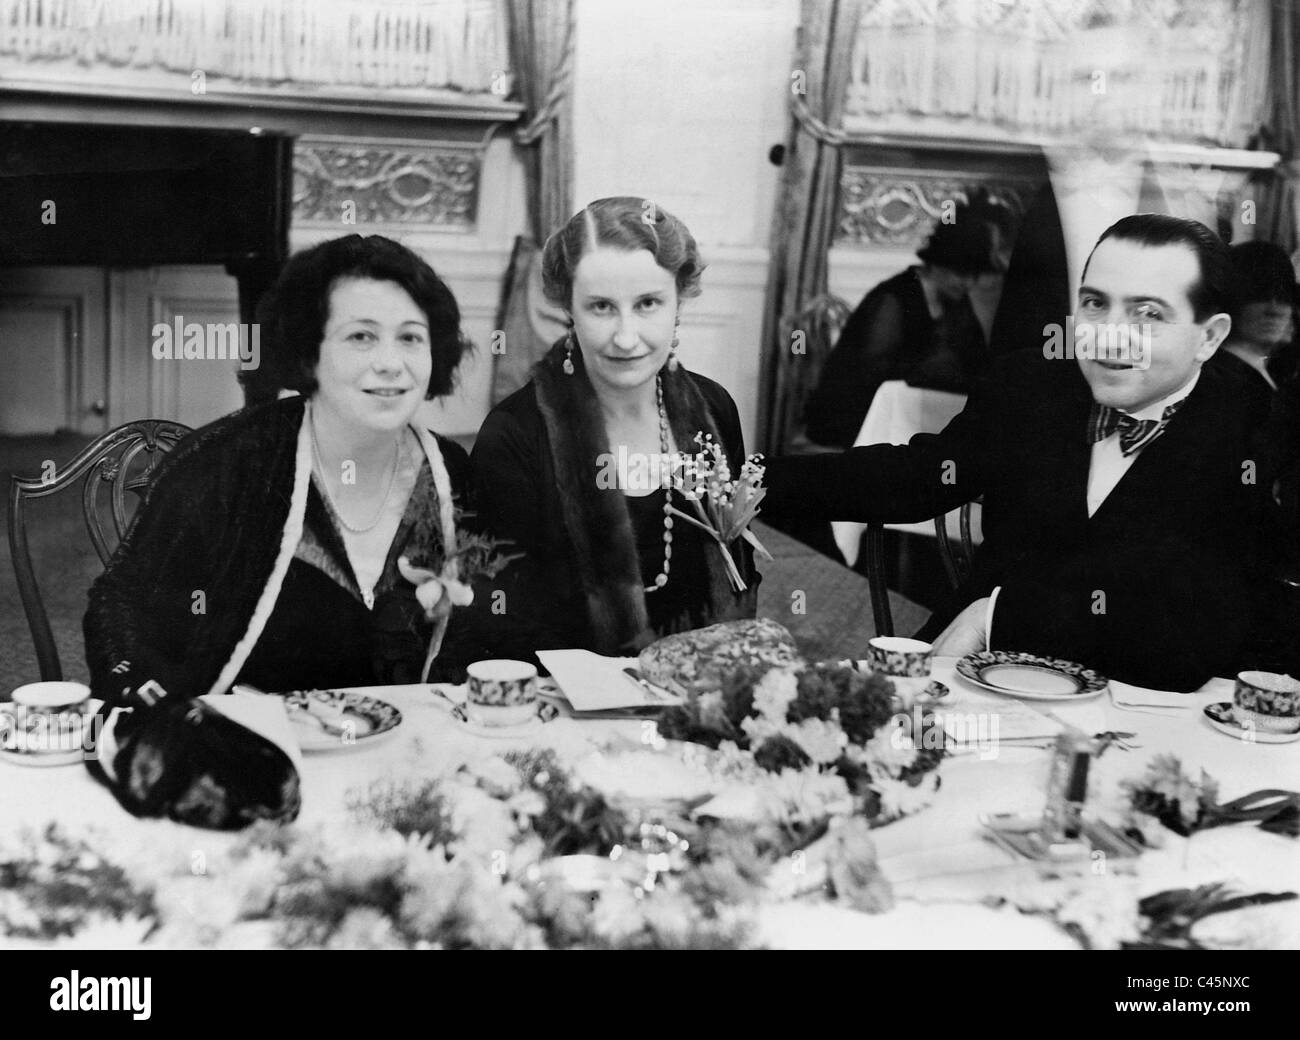 Betty Stern, Thea von Harbou et Fritz Lang dans le Berlin Hotel Kaiserhof (cour impériale), 1930 Banque D'Images